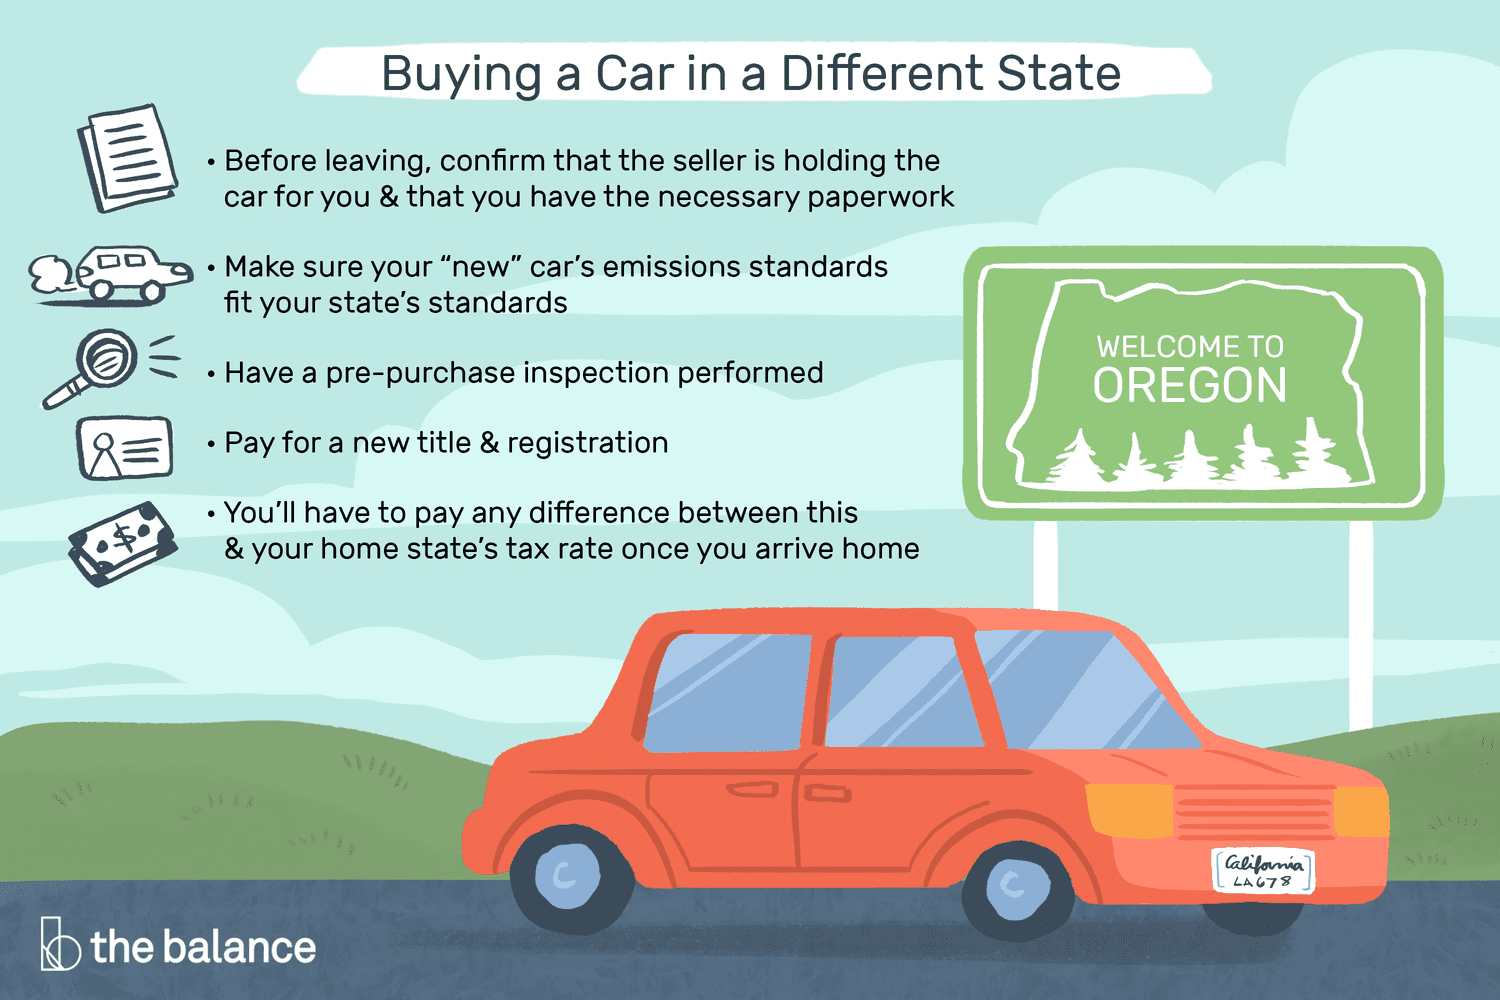 自定义图片显示在不同的状态下买车:在离开之前，确认卖家为你保管着汽车，并且你有必要的文件。确保你的“新”车符合你所在州的排放标准。进行购买前检查。支付新的标题和注册。一旦你回到家，你就必须支付这个税率和你所在州税率之间的差额。